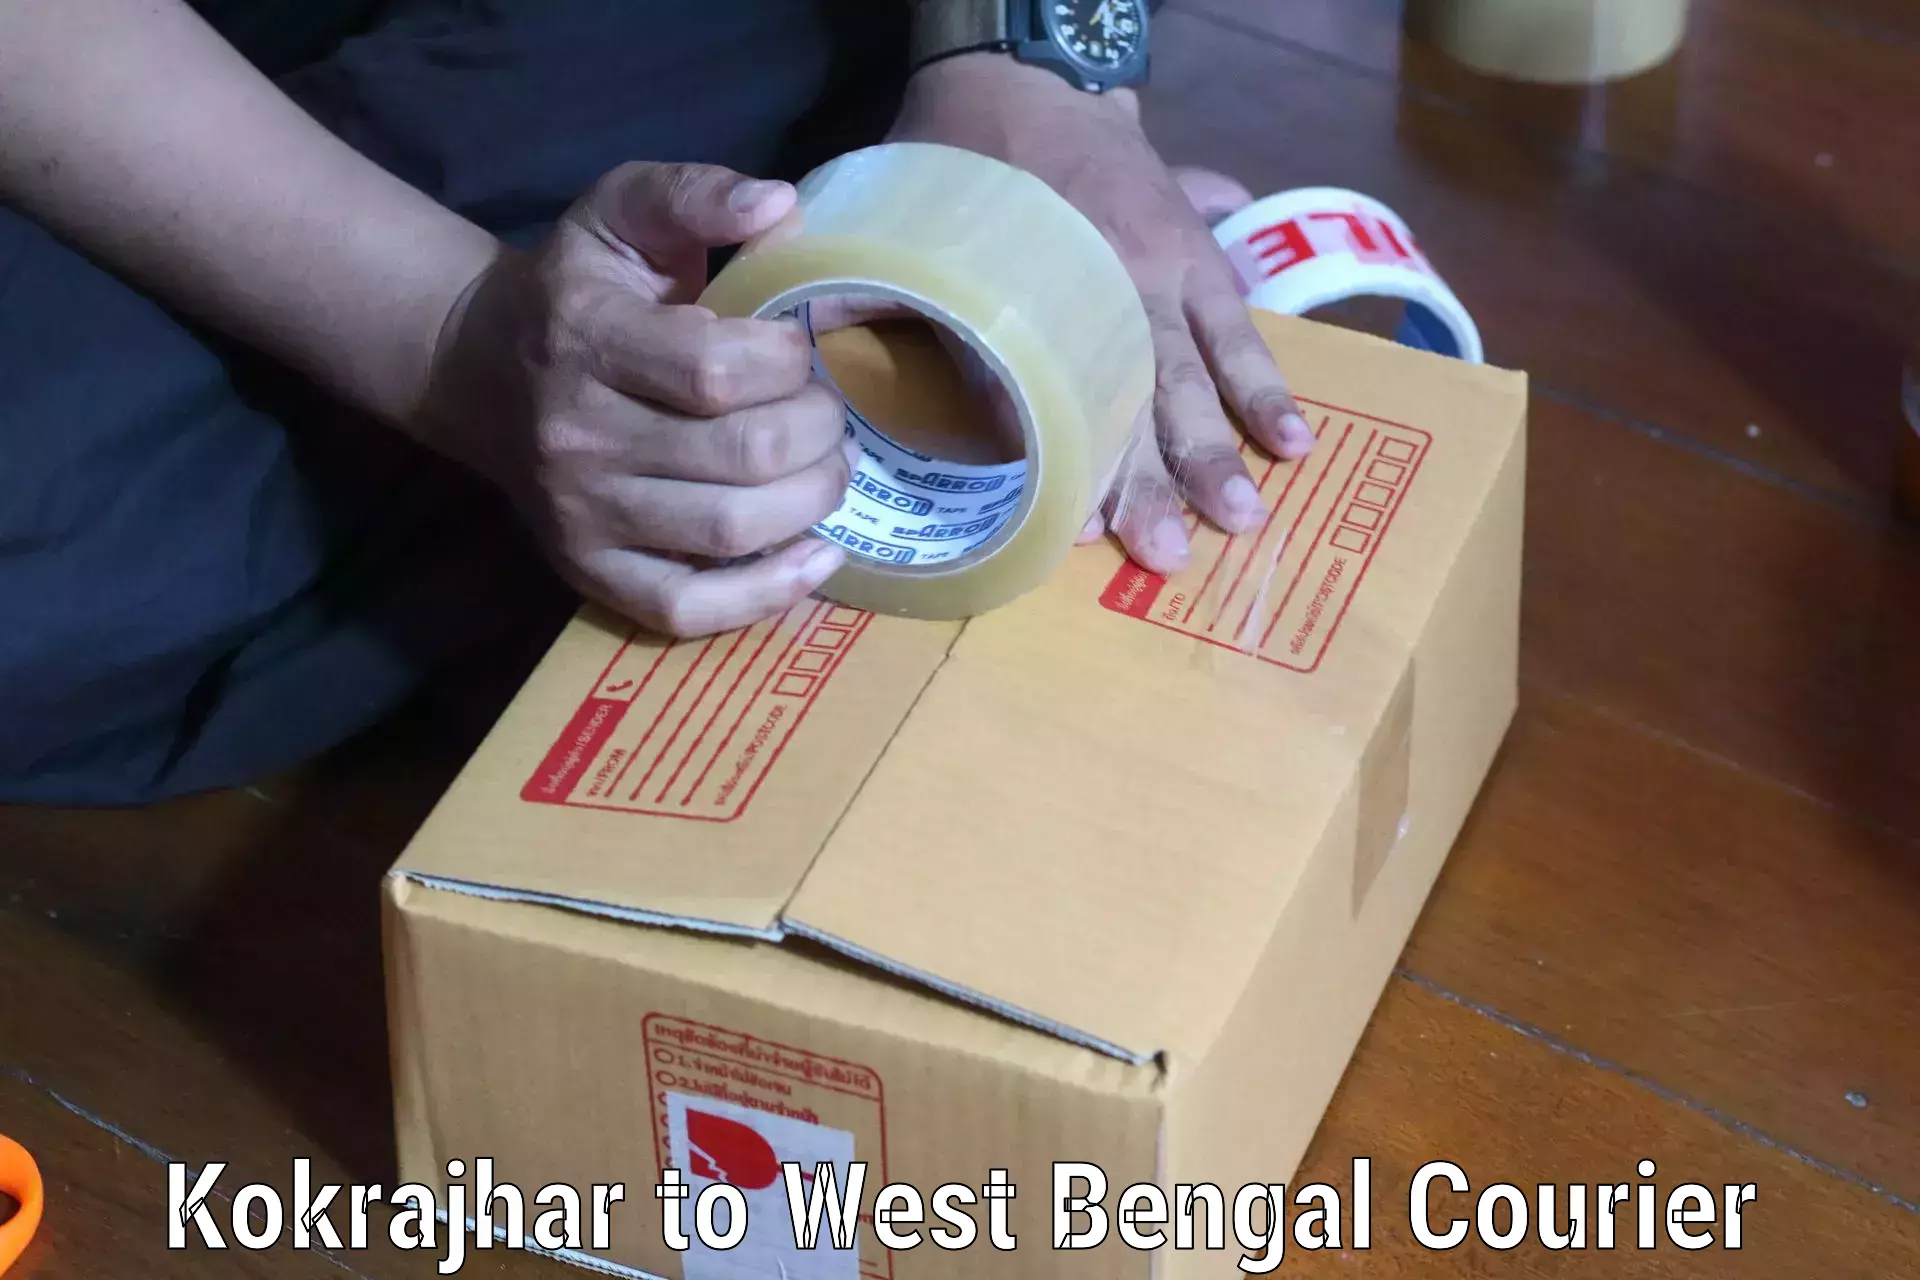 Nationwide parcel services Kokrajhar to Baneswar